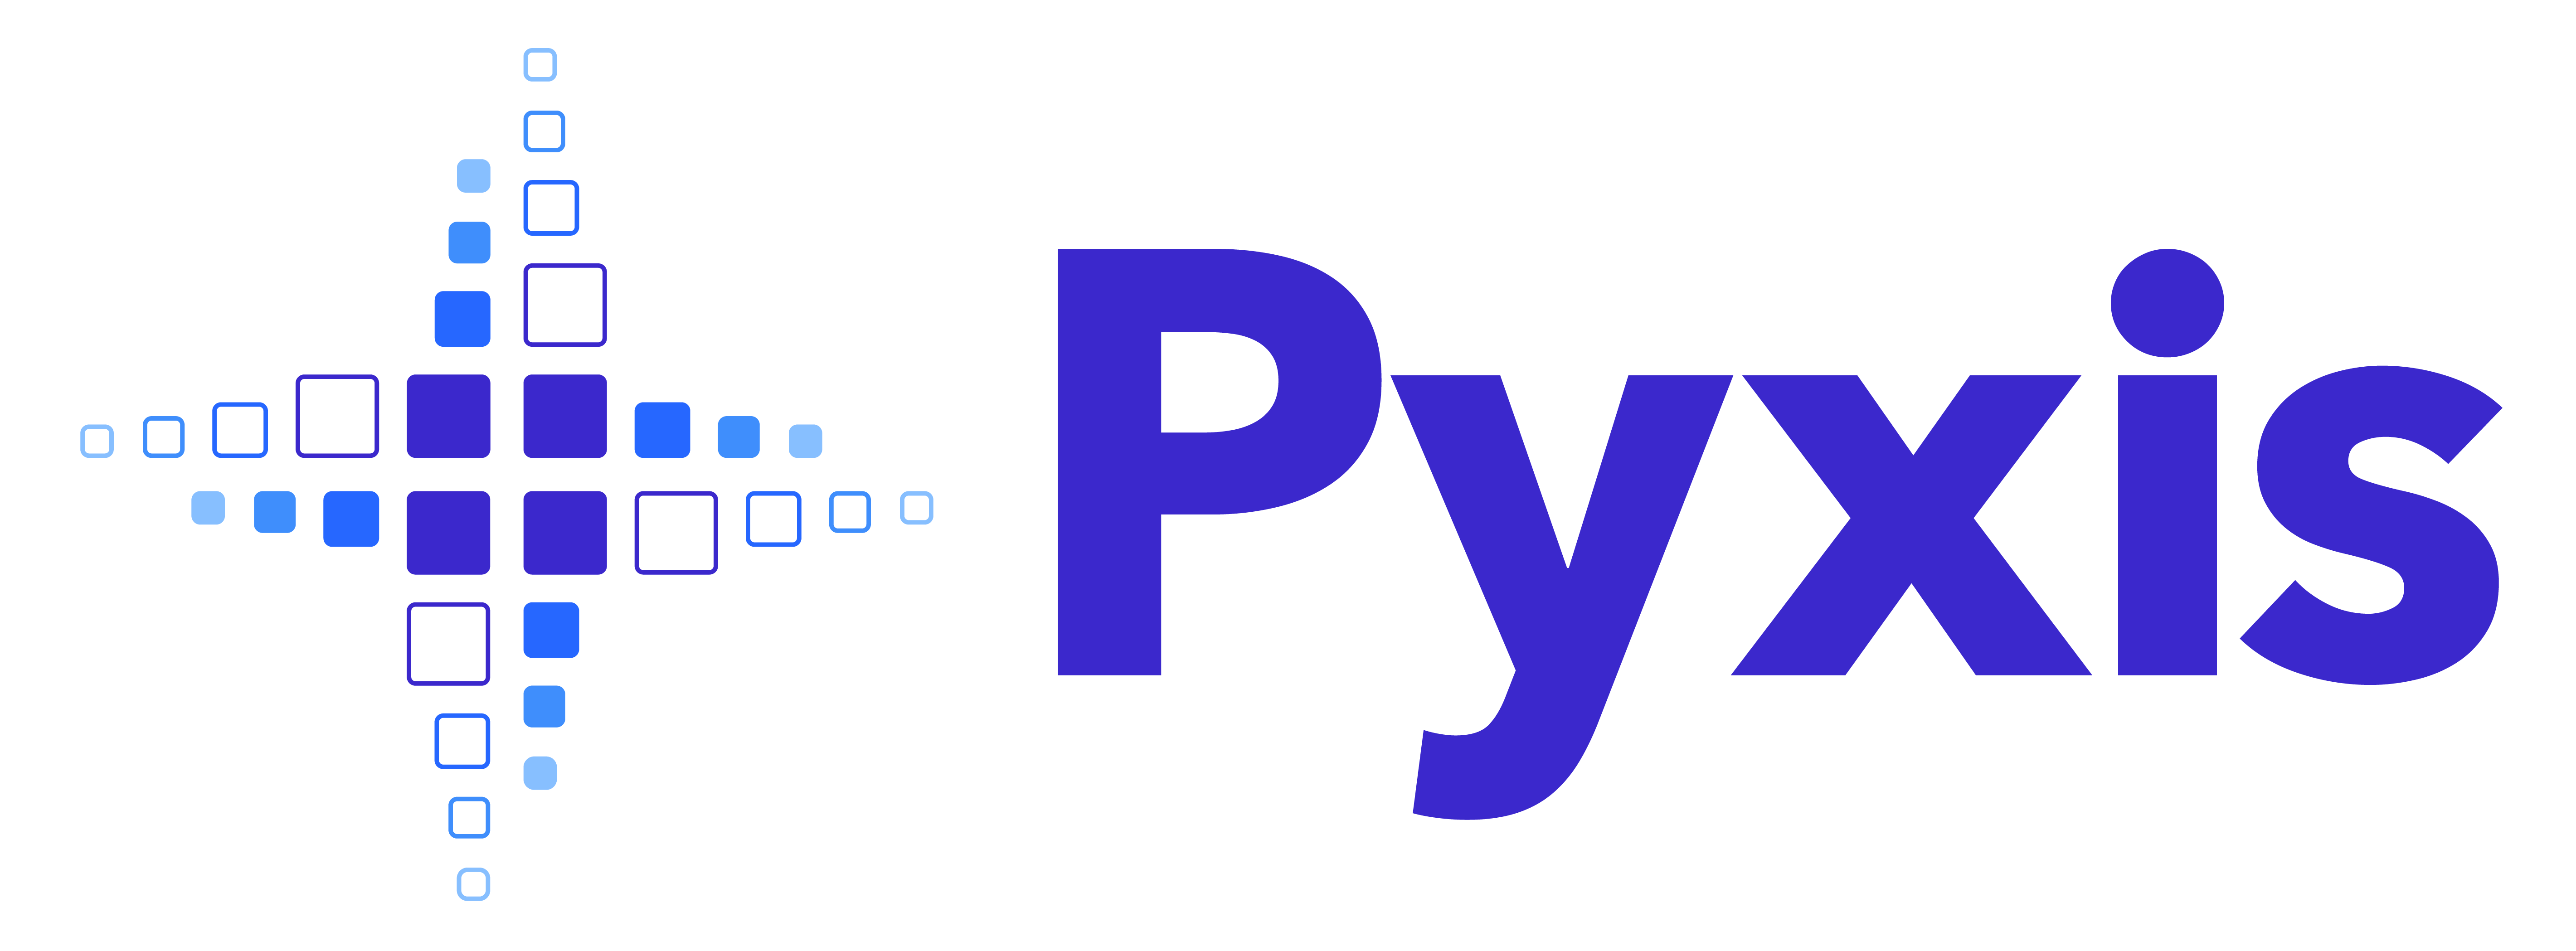 Pyxis logo